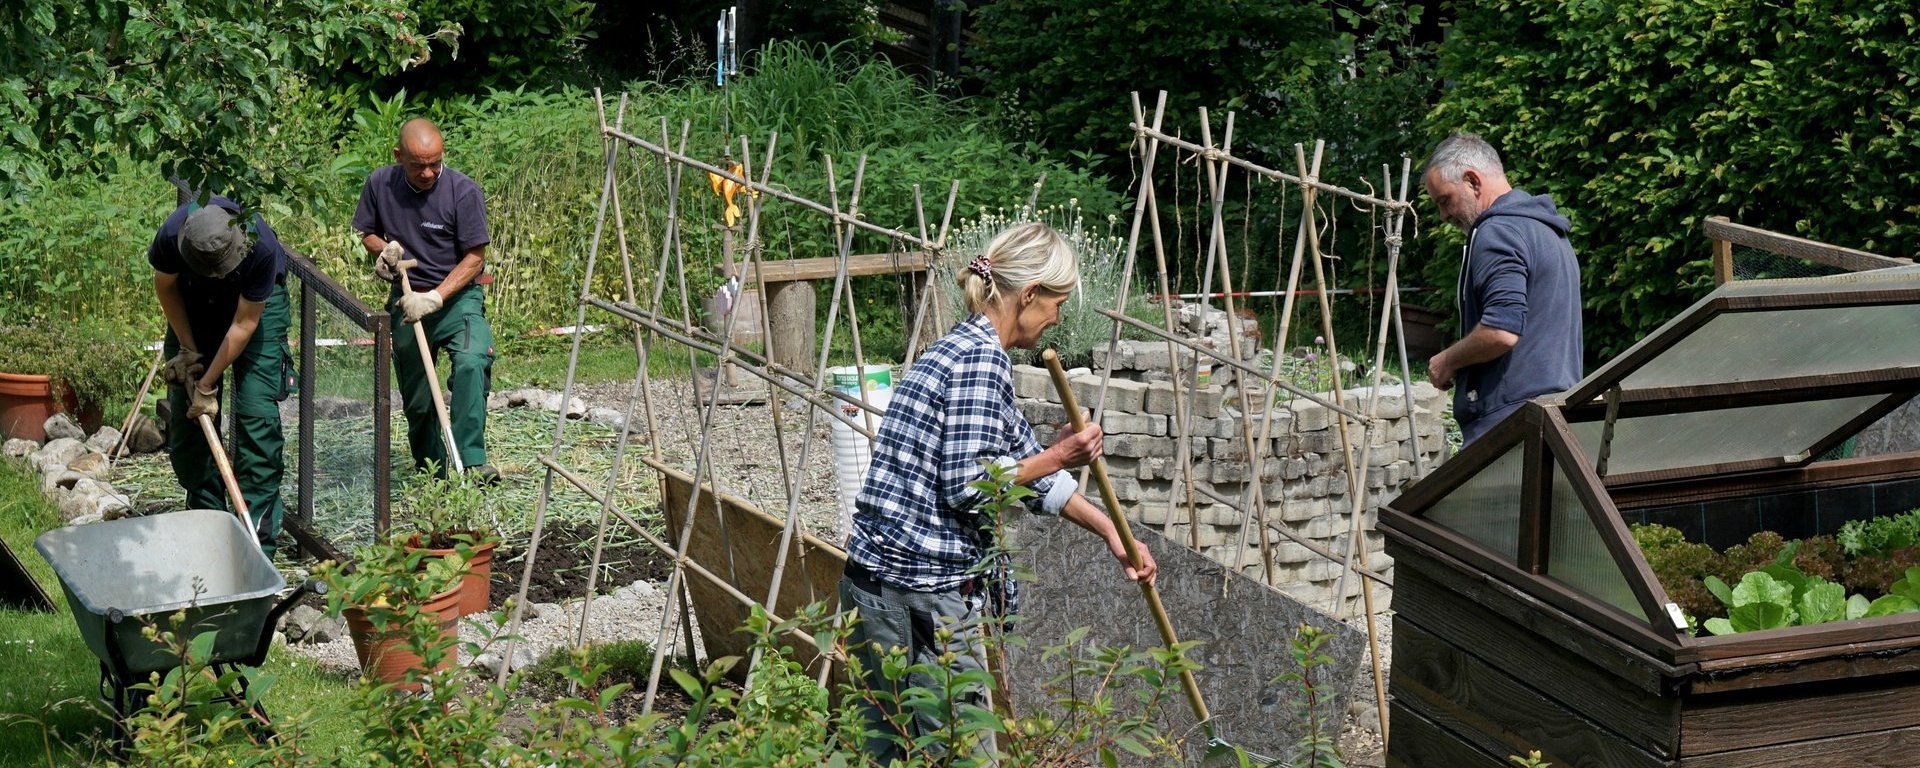 Gartenarbeit: eine Frau und drei Männer arbeiten am Gemüsebeet